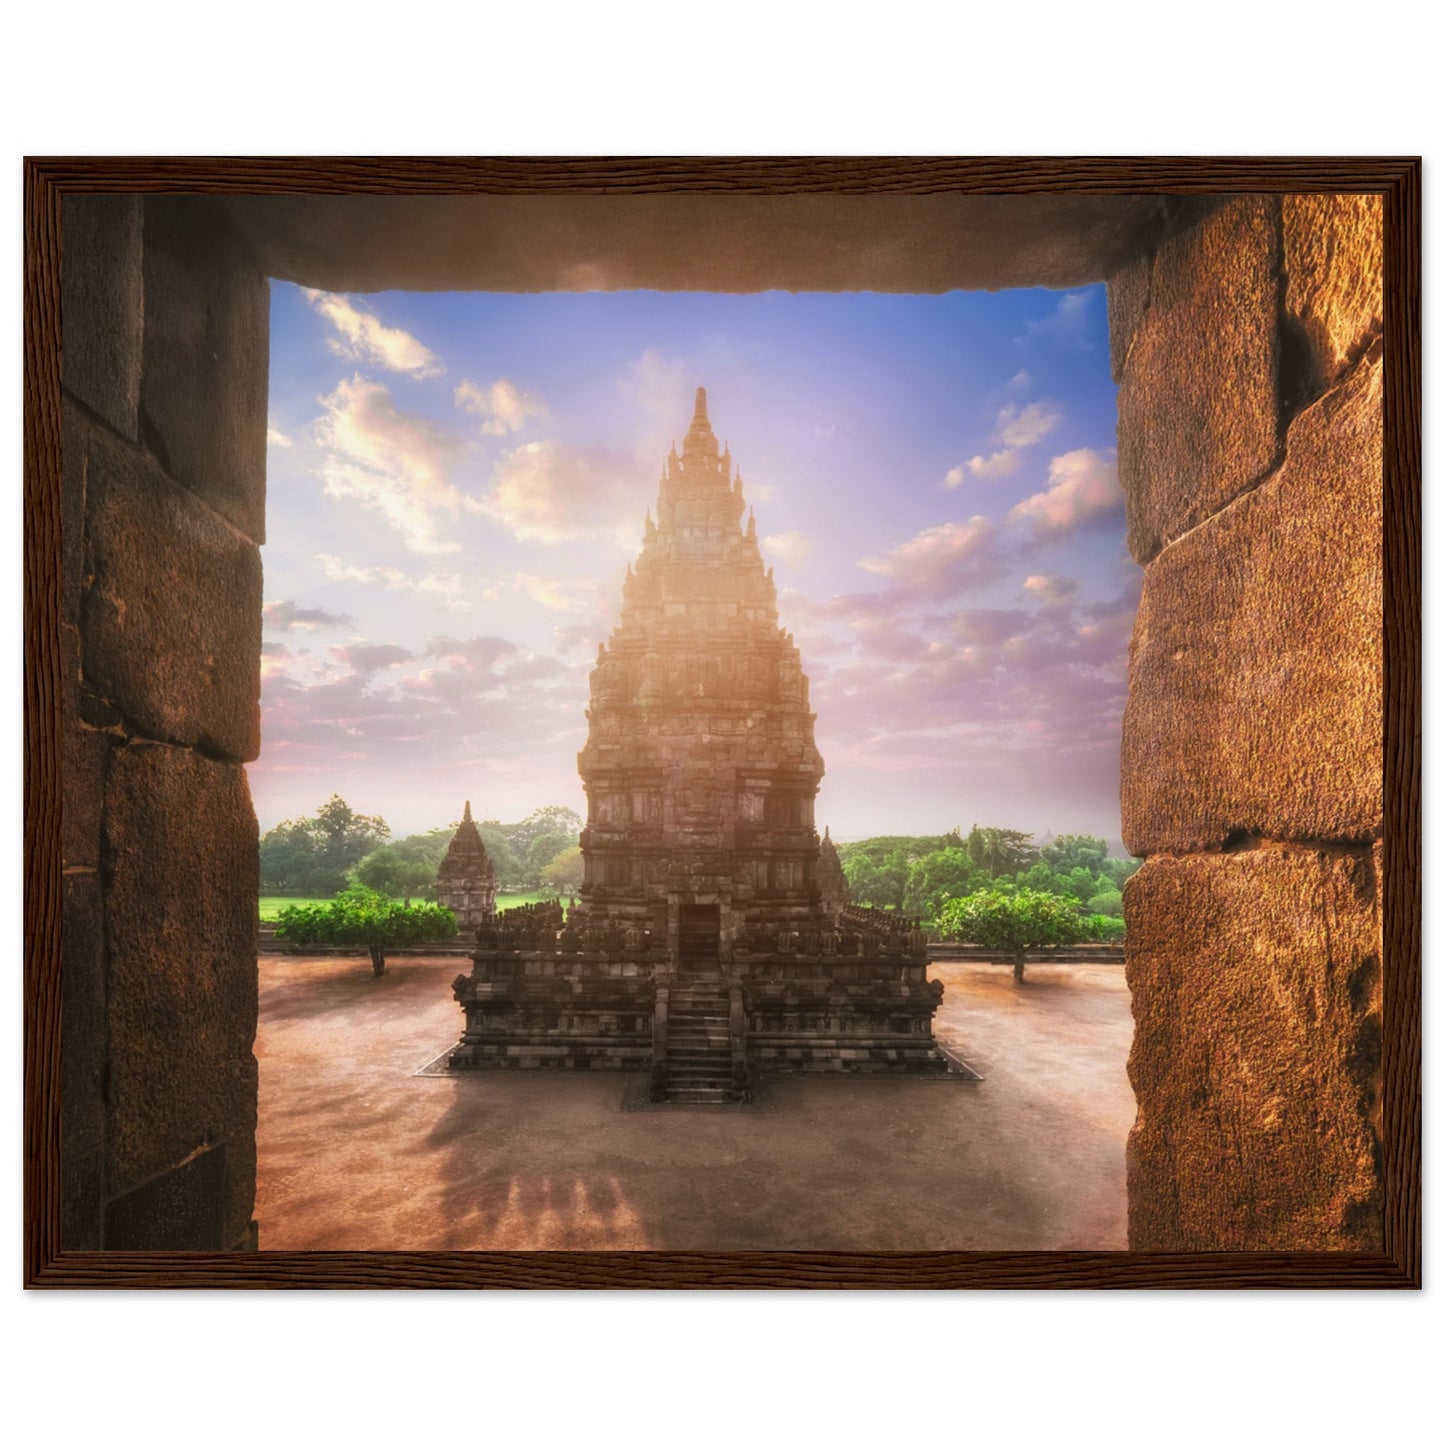 Prambanan tempel